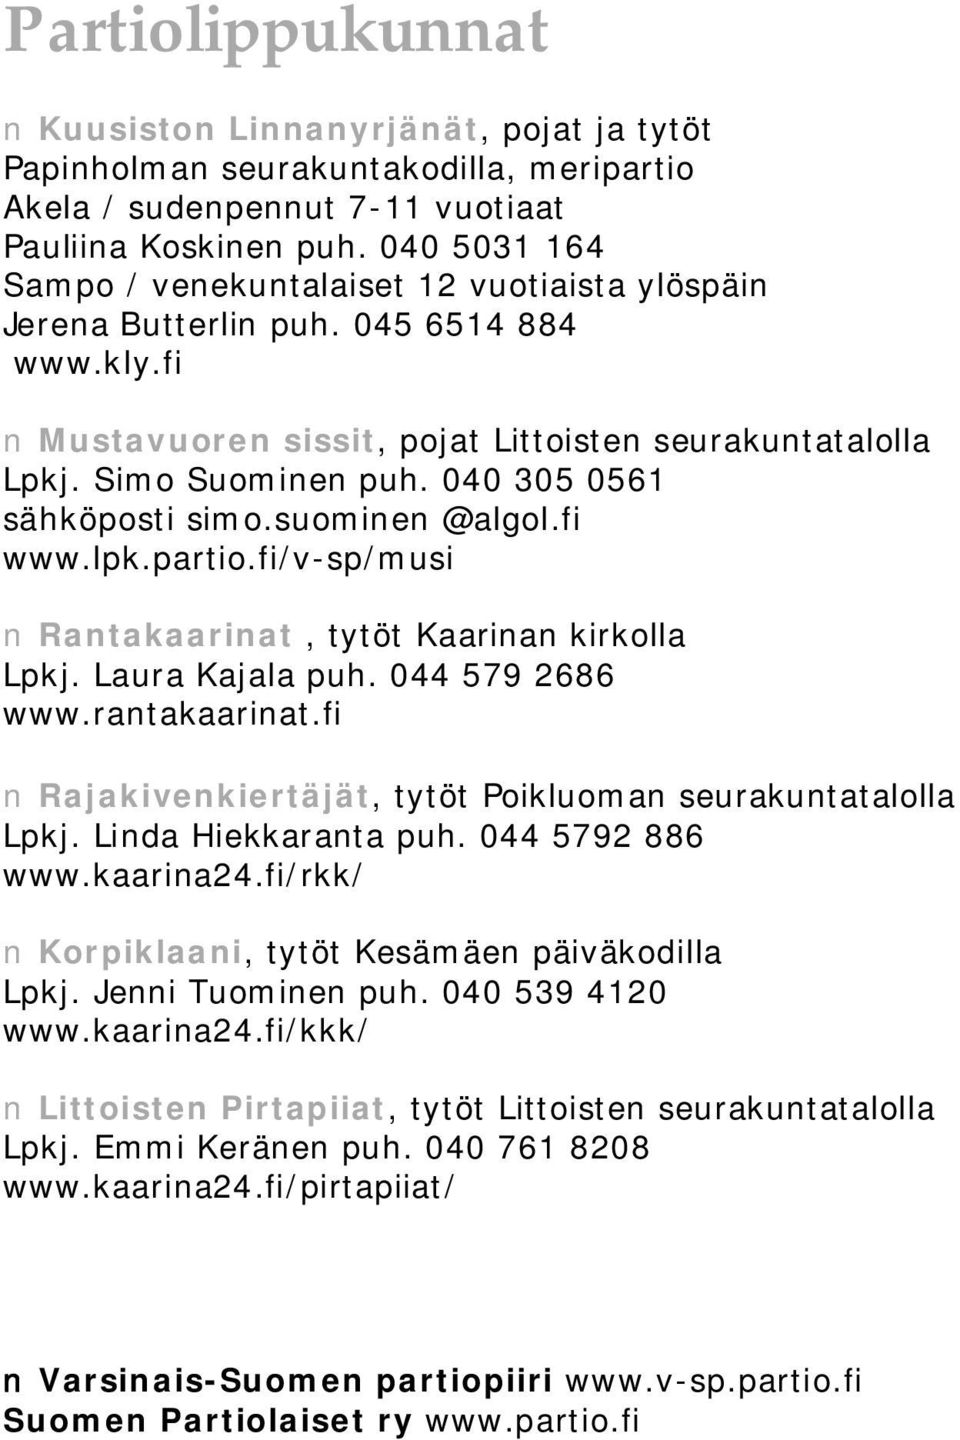 040 305 0561 sähköposti simo.suominen @algol.fi www.lpk.partio.fi/v sp/musi Rantakaarinat, tytöt Kaarinan kirkolla Lpkj. Laura Kajala puh. 044 579 2686 www.rantakaarinat.